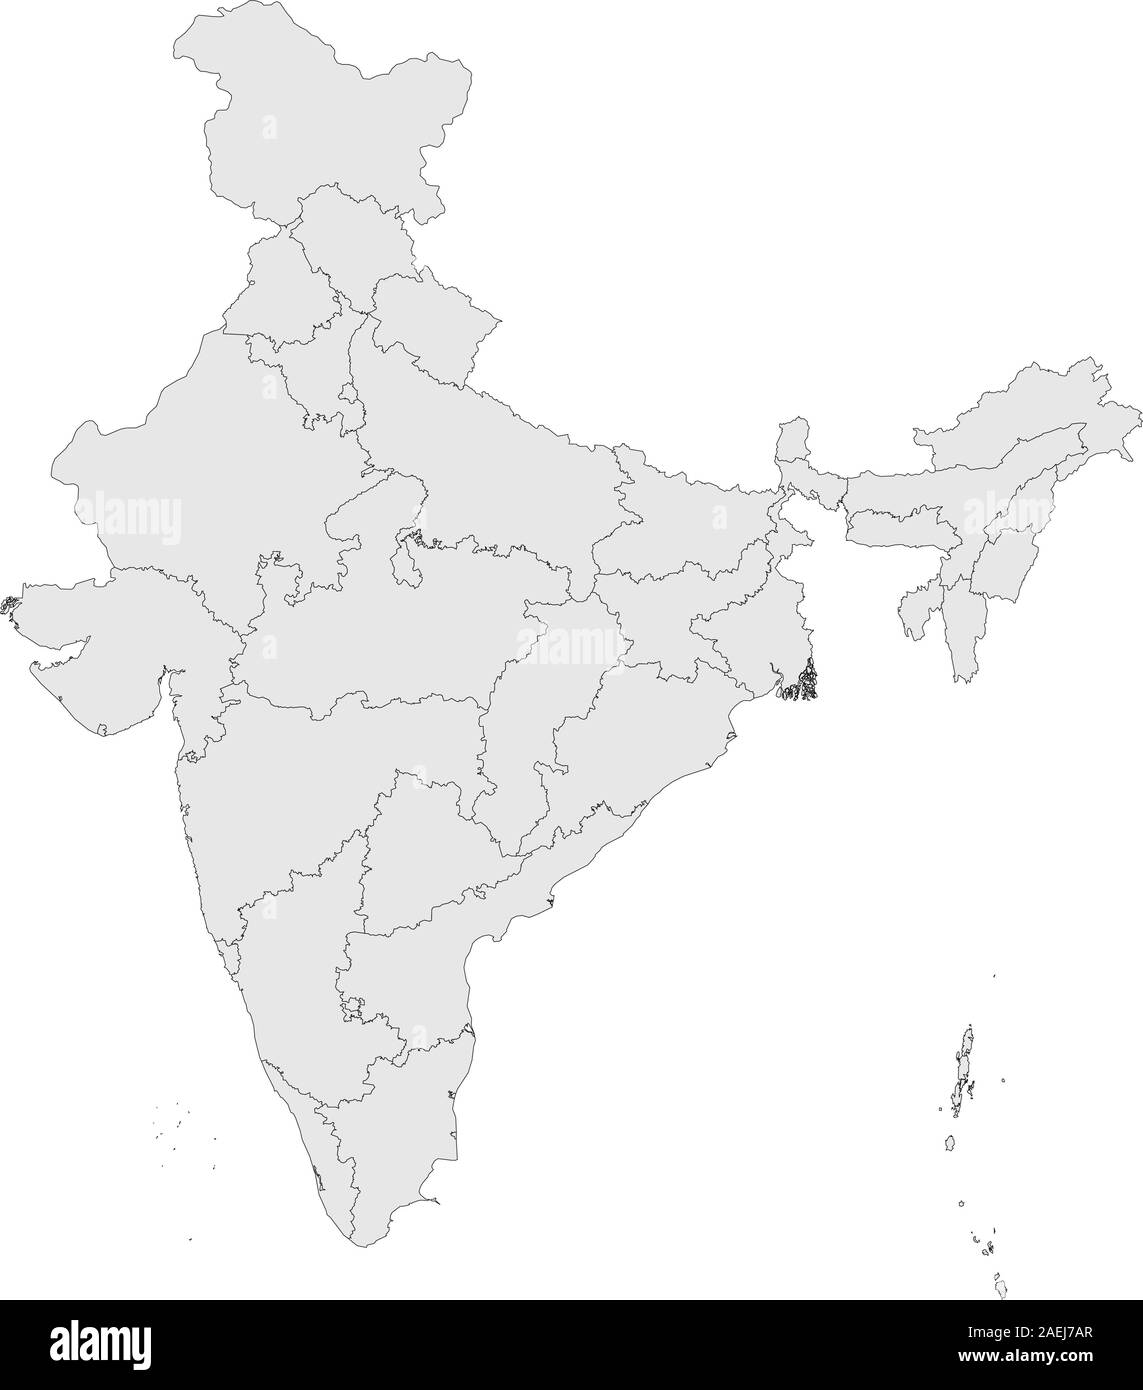 Carte politique de l'Inde avec les provinces vector illustration. Arrière-plan de couleur gris clair. Illustration de Vecteur